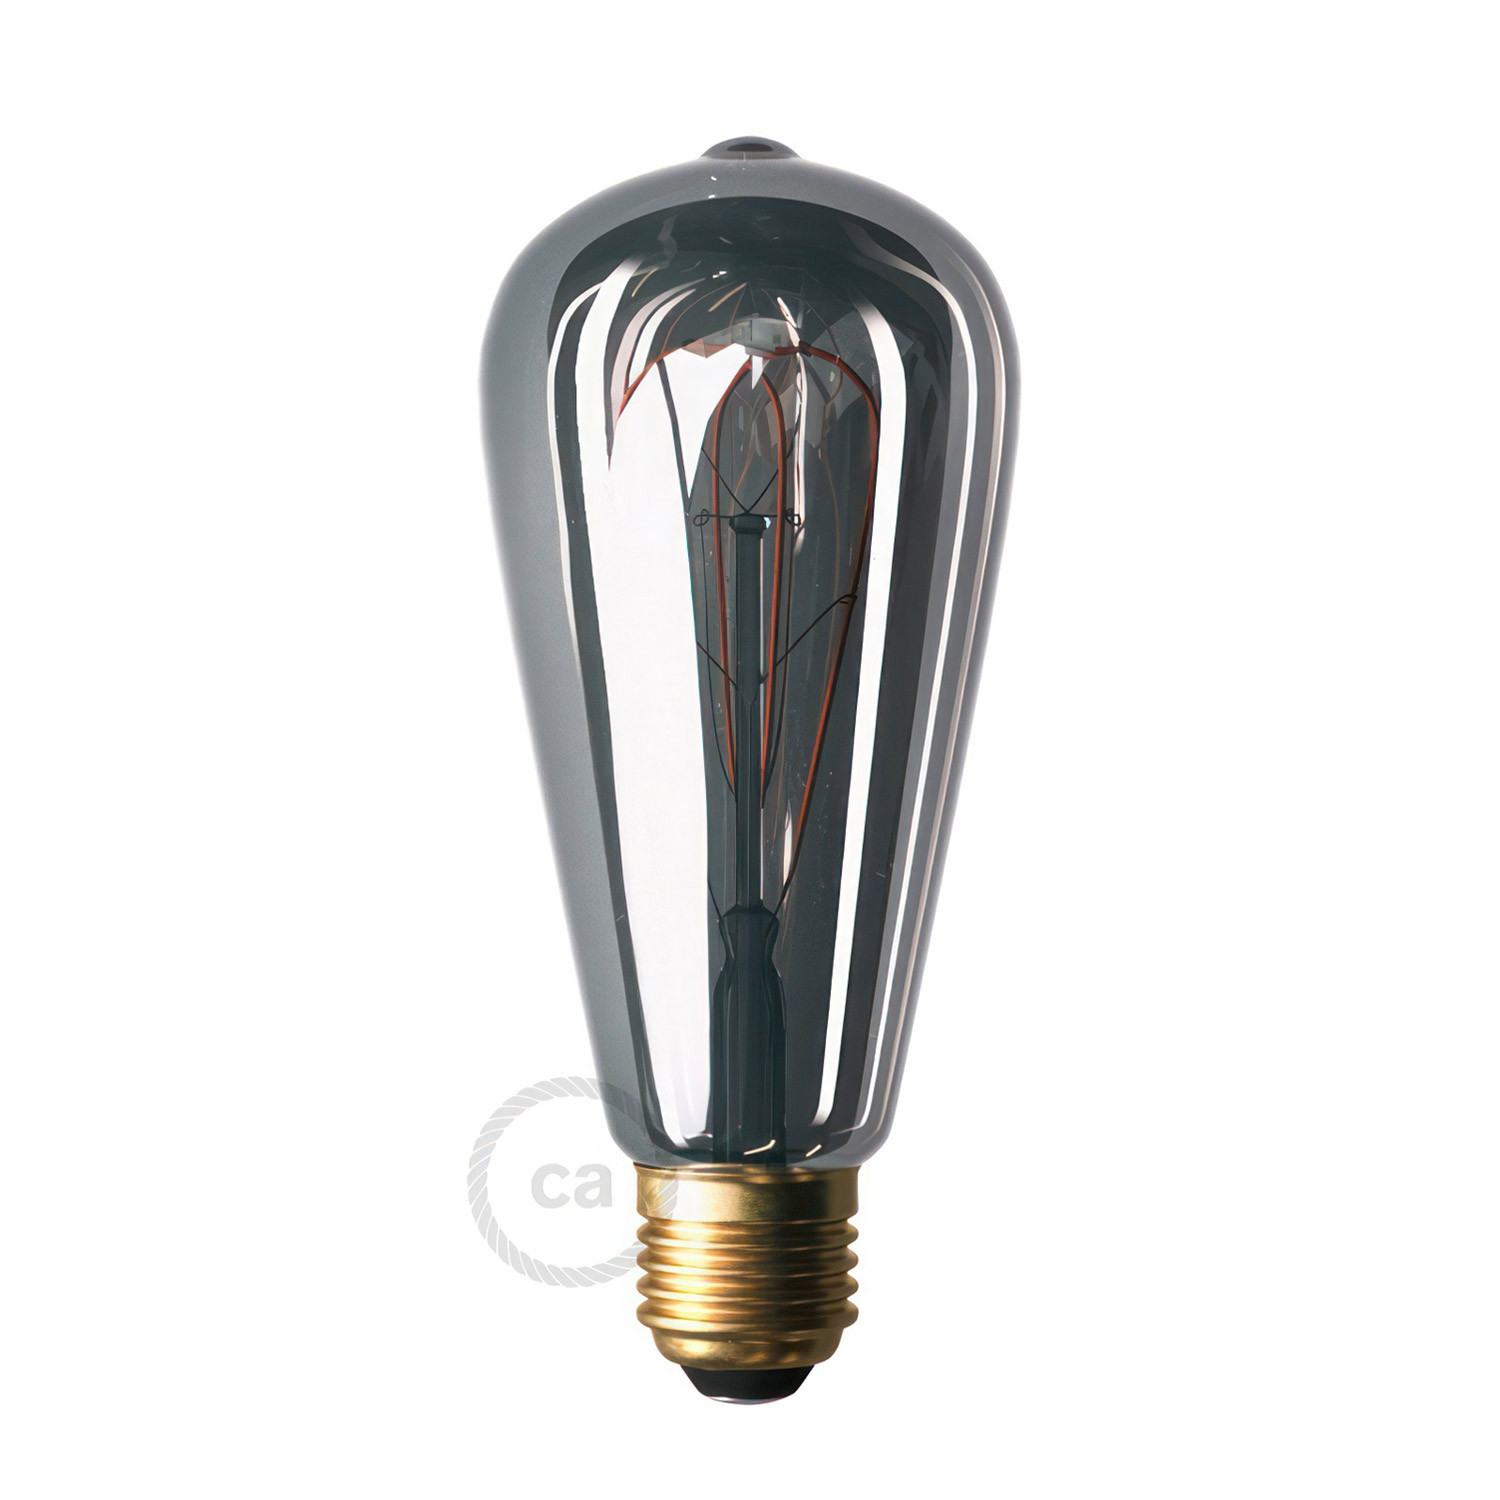 Flex 60 lampada da parete o soffitto snodabile a luce diffusa con lampadina LED ST64